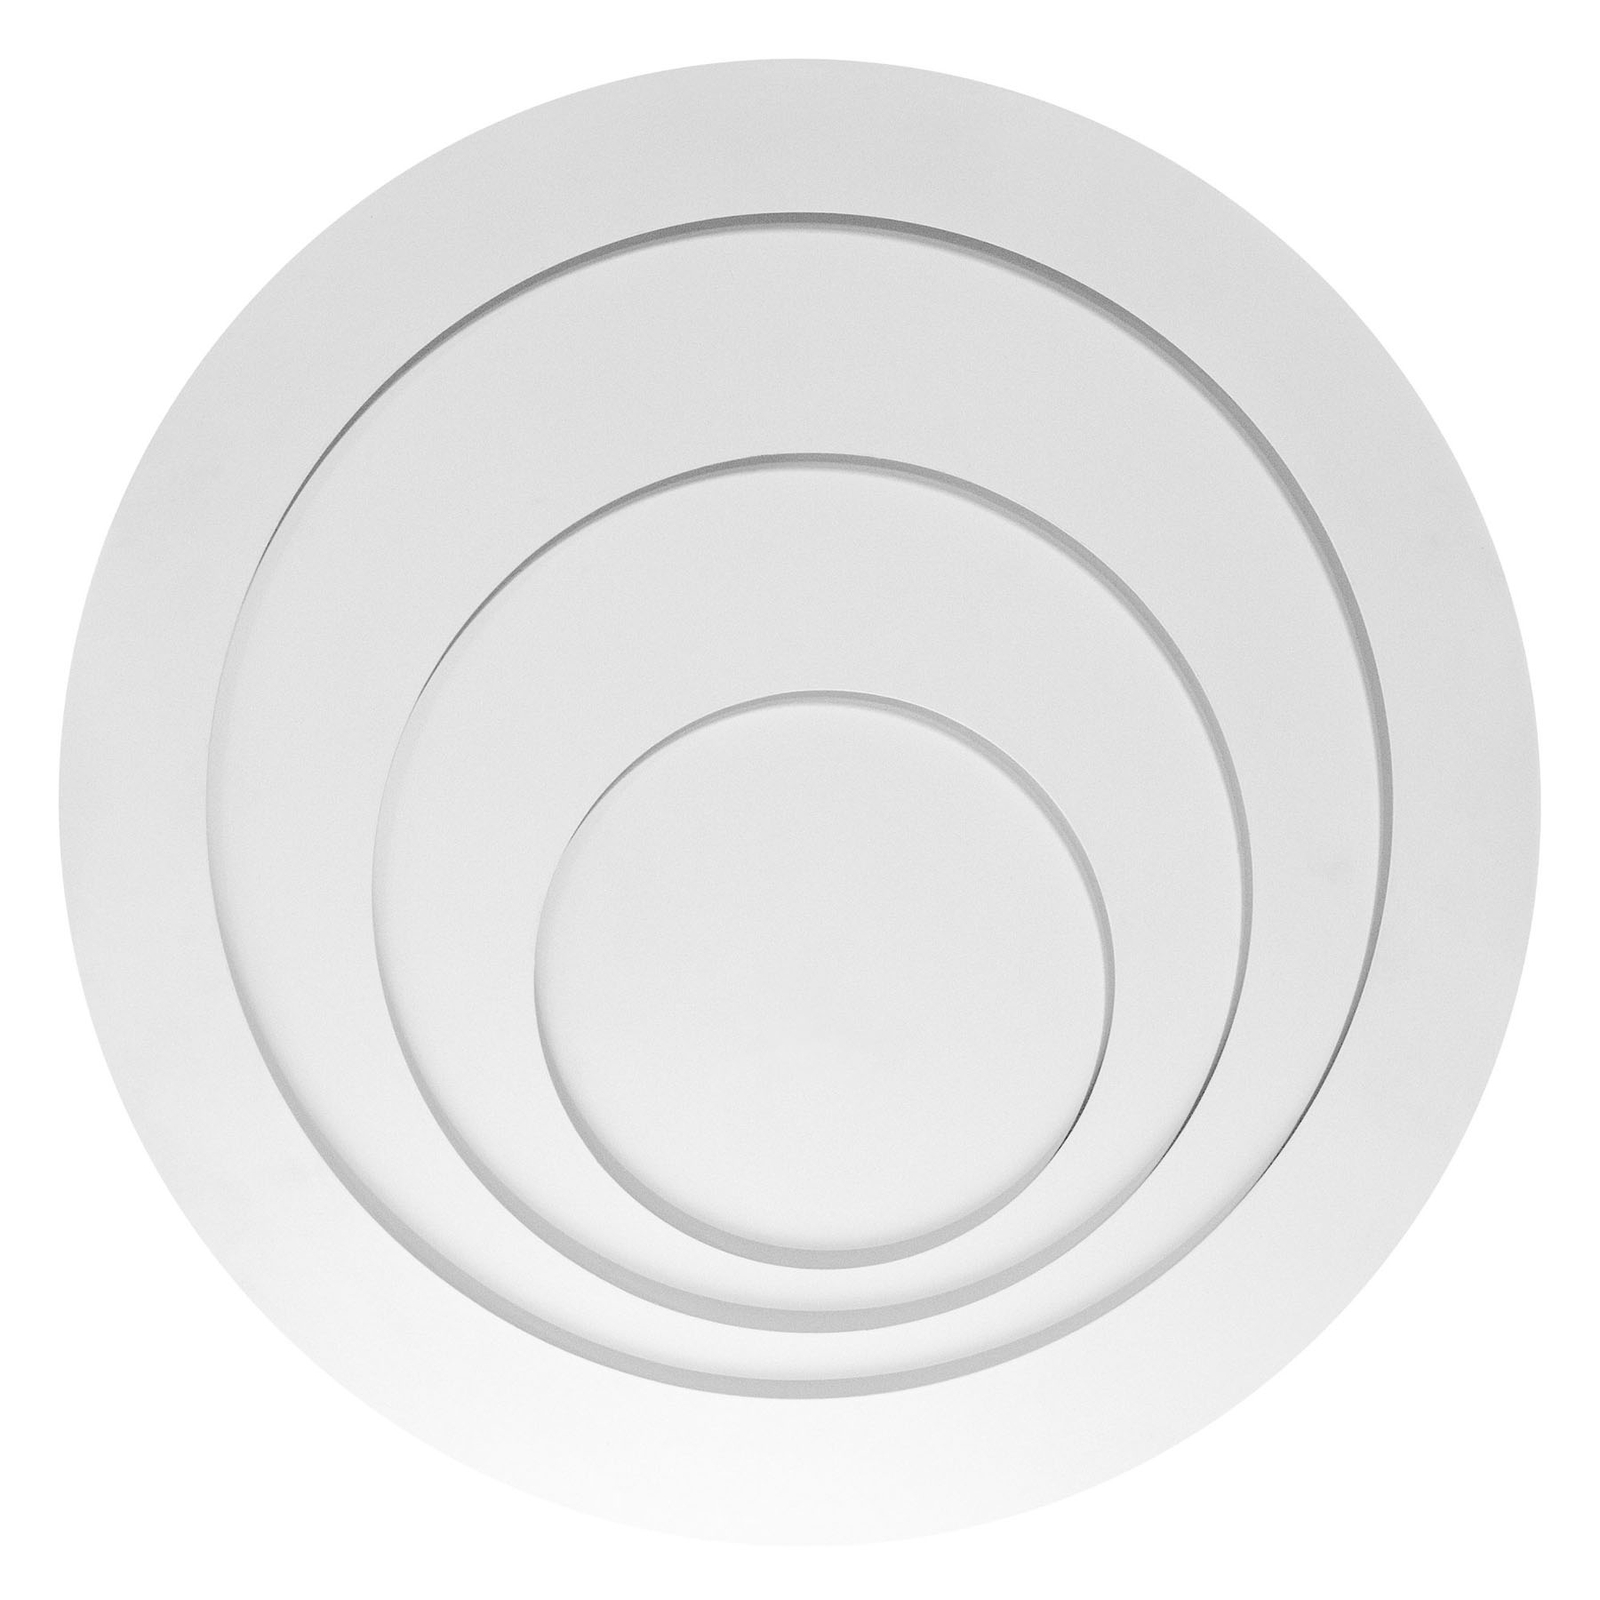 LEDVANCE SMART+ WiFi Orbis Spiral CCT 50cm weiß